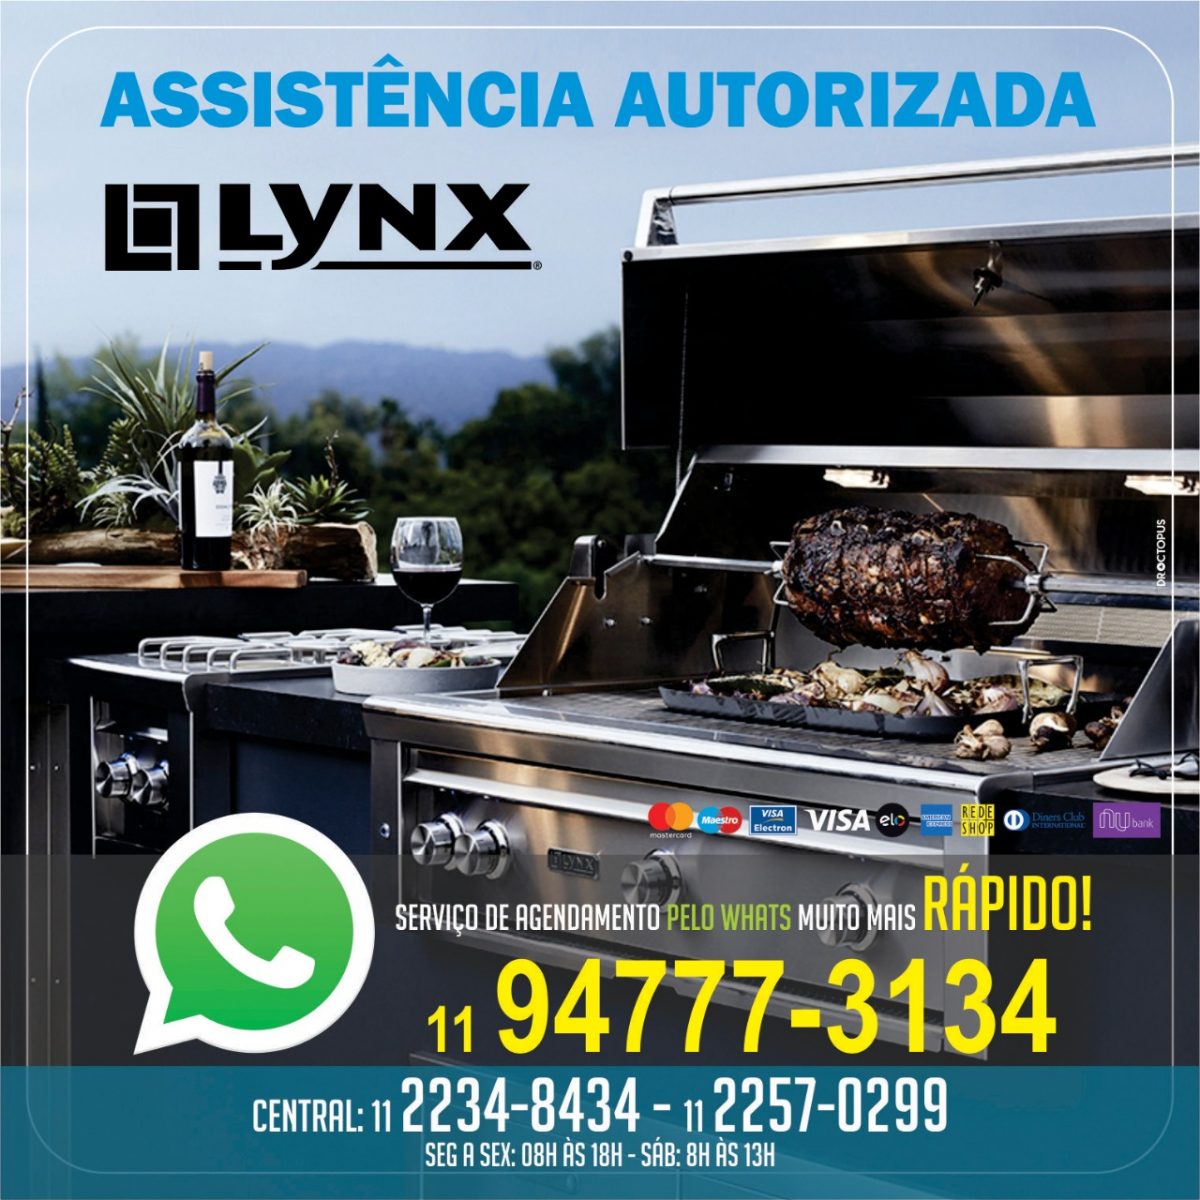 lynx-churrasqueiras-assistencia-autorizada